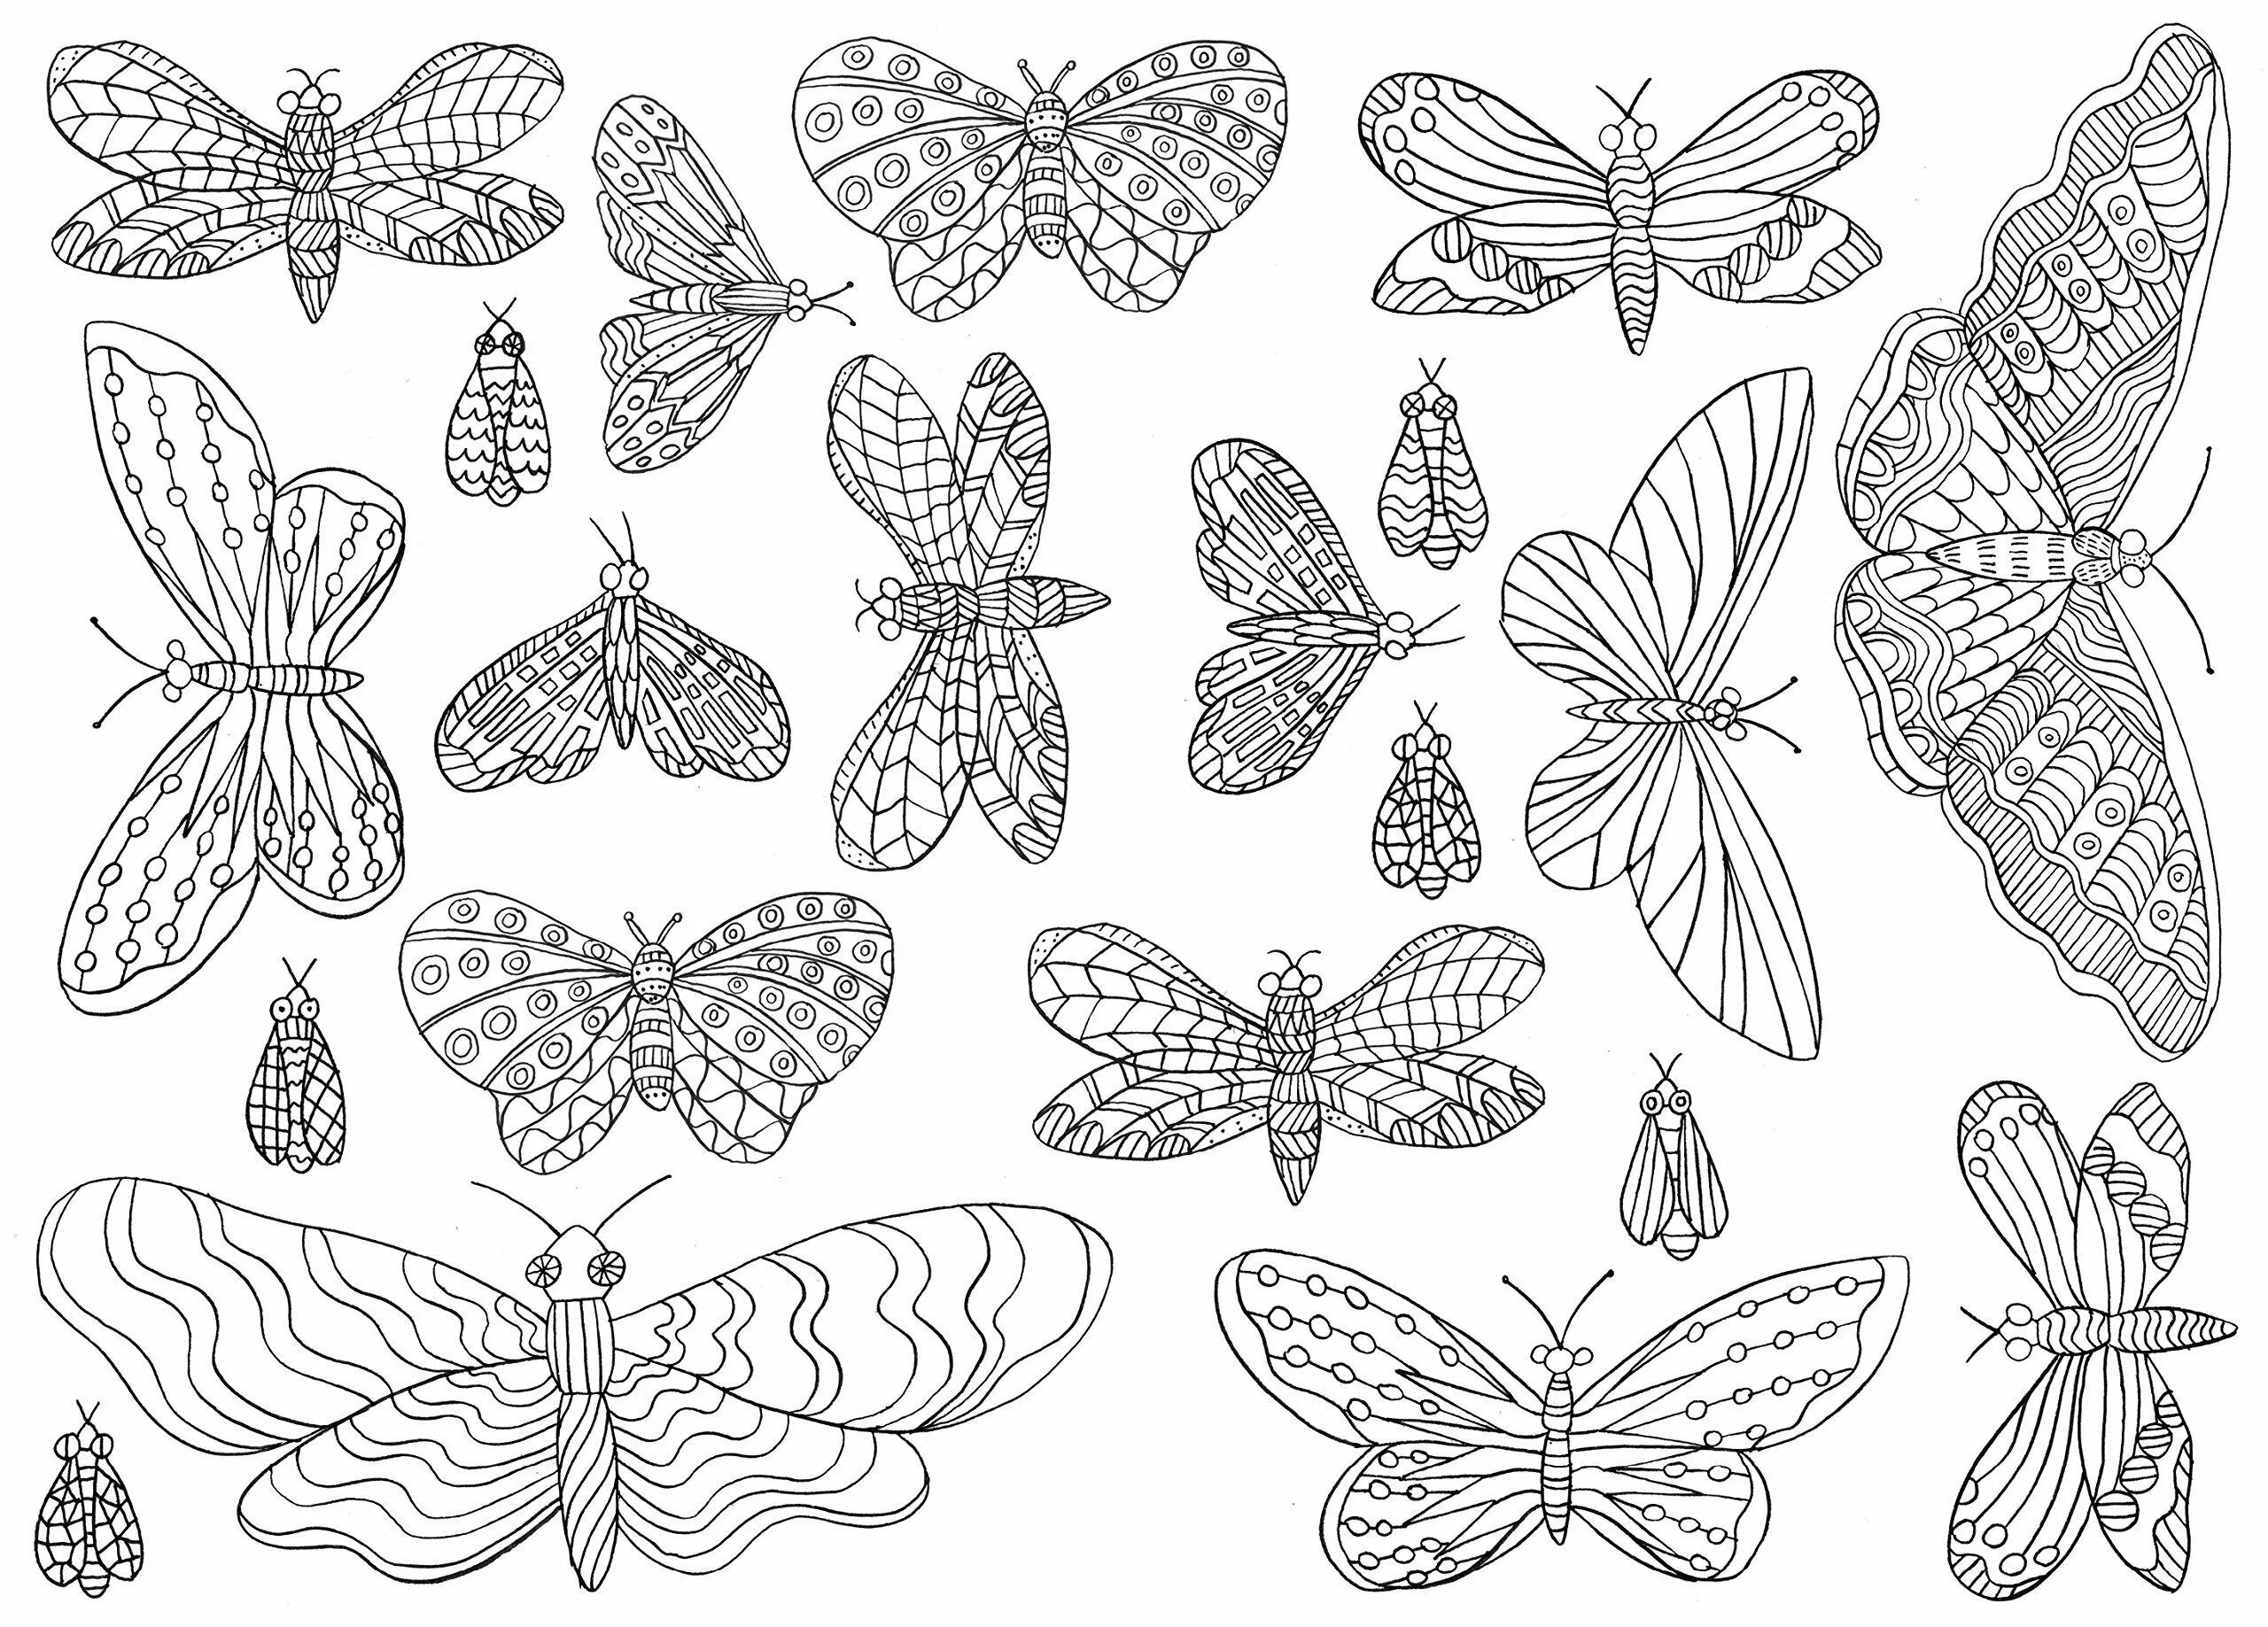 Раскраска на 6 листов. Раскраска "бабочки". Раскраска антистресс бабочка. Раскраска для девочек бабочки. Картинки для раскрашивания бабочки.